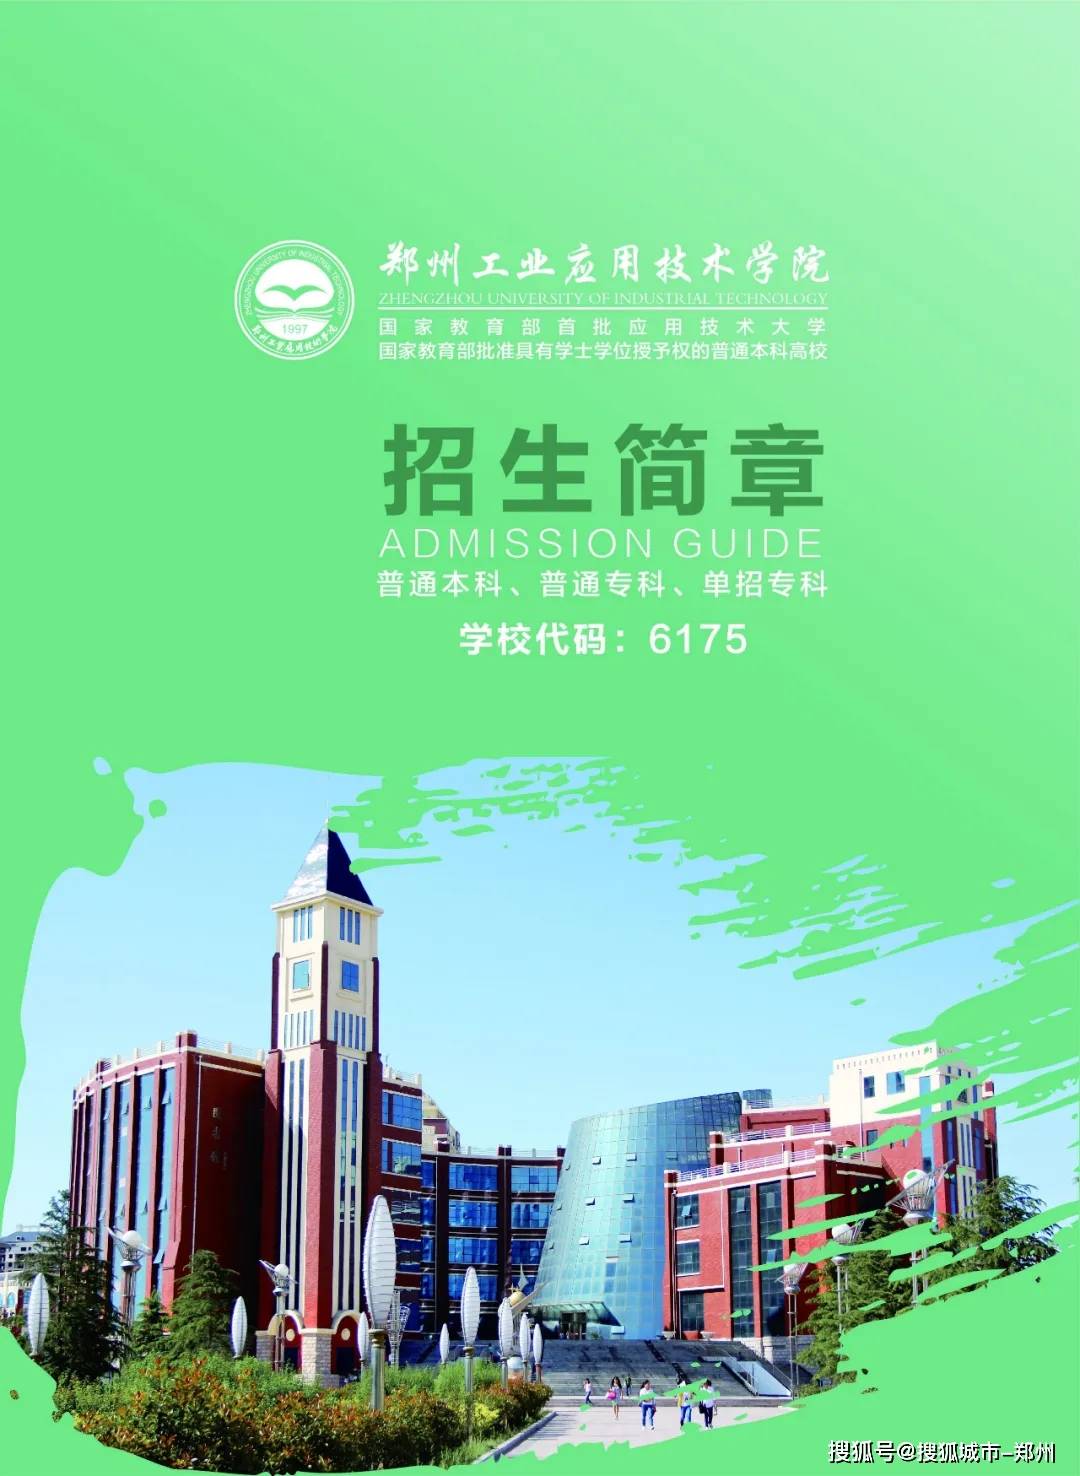 郑州工业应用技术学院2020年招生简章